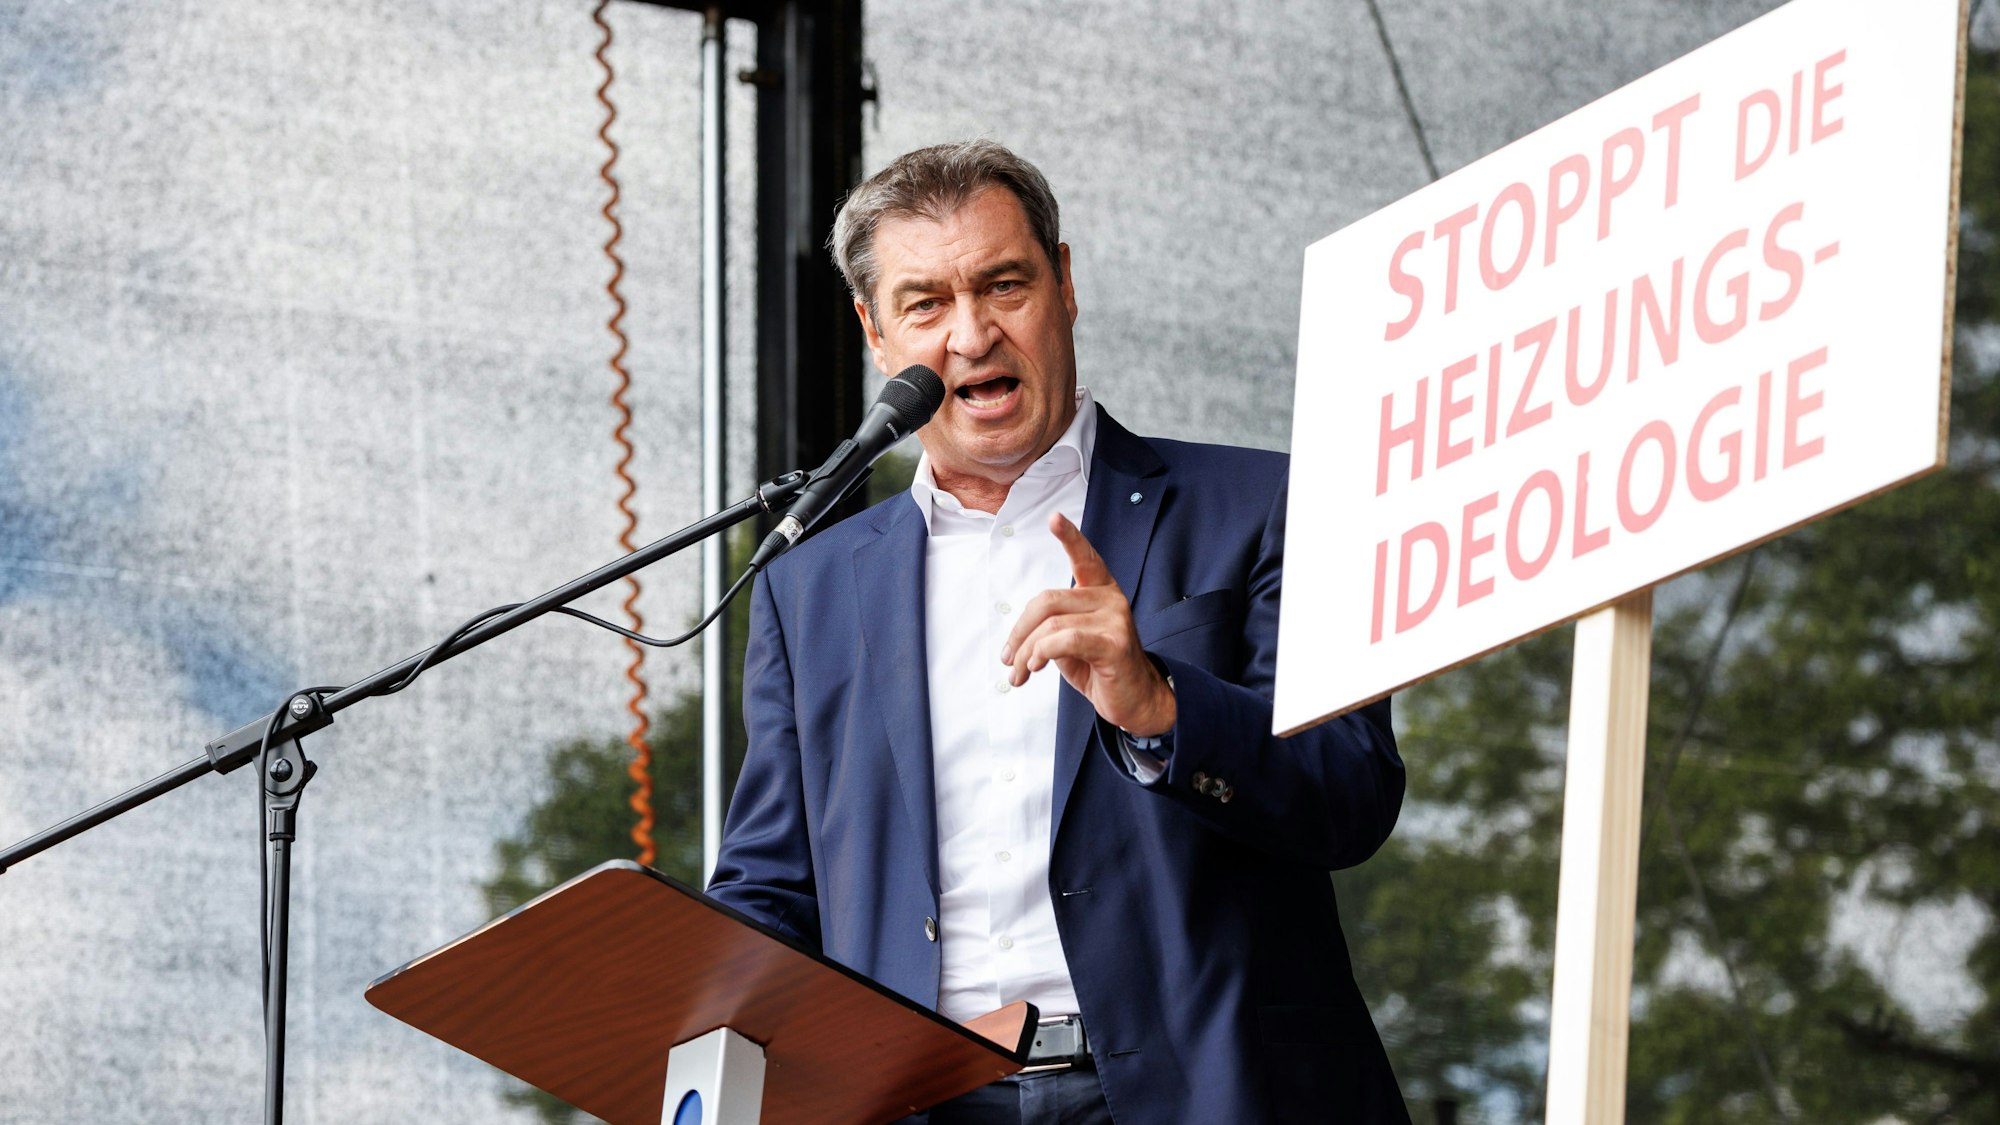 10.06.2023, Bayern, Erding: Markus Söder (CSU), Parteivorsitzender und Ministerpräsident von Bayern, spricht bei einer Demonstration gegen die Klima-Politik der Ampelregierung unter dem Motto ·Stoppt die Heizungsideologie·. Foto: Matthias Balk/dpa +++ dpa-Bildfunk +++